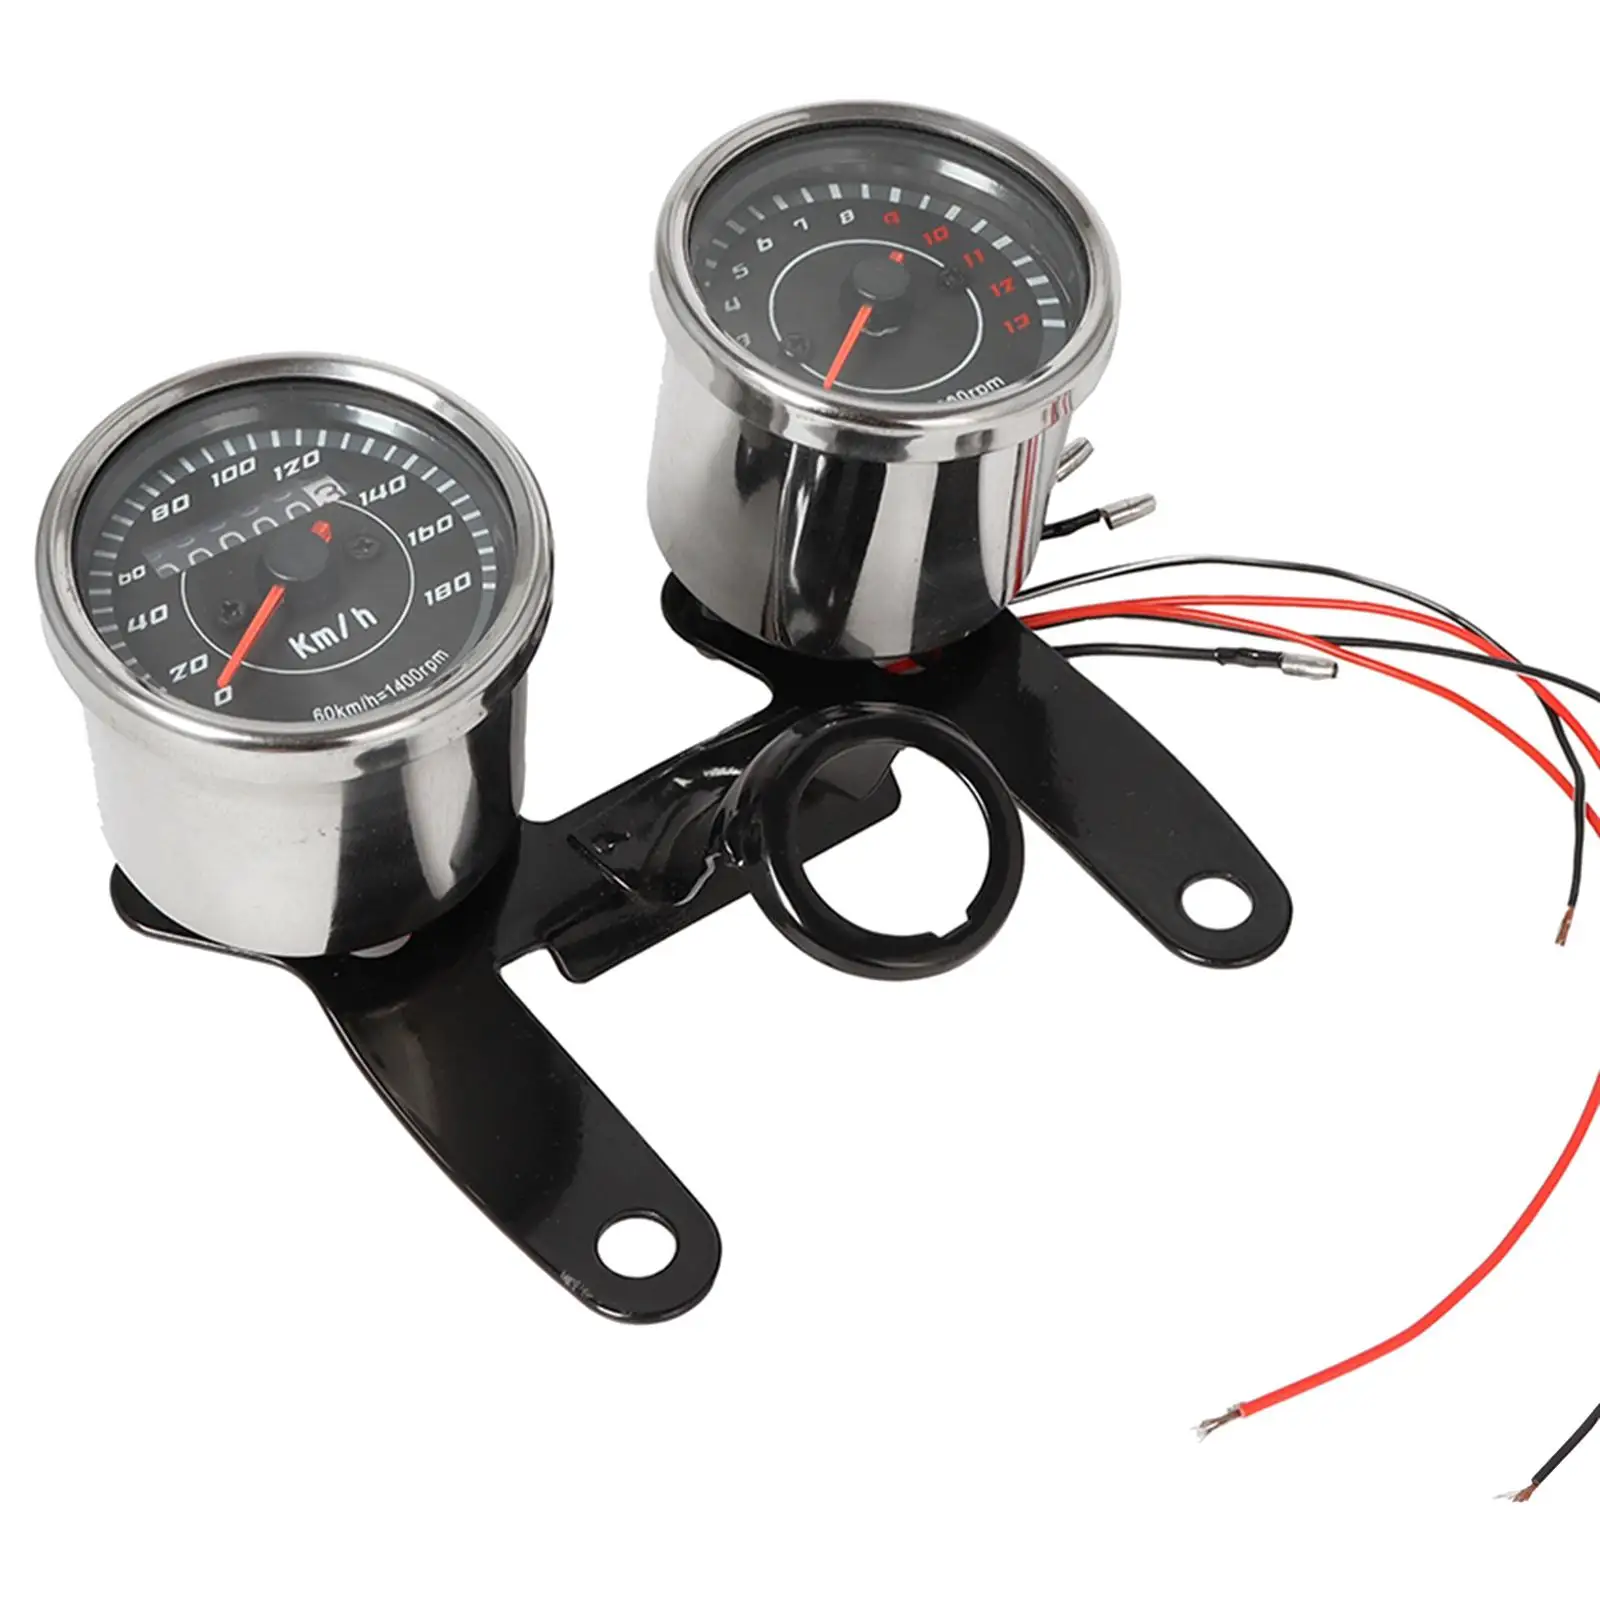 2-In-1 Motorcycle Speedometer Odometer LED Backlight High Accuracy Waterproof 13000RPM 12V Meter Gauge Black Stainless Steel